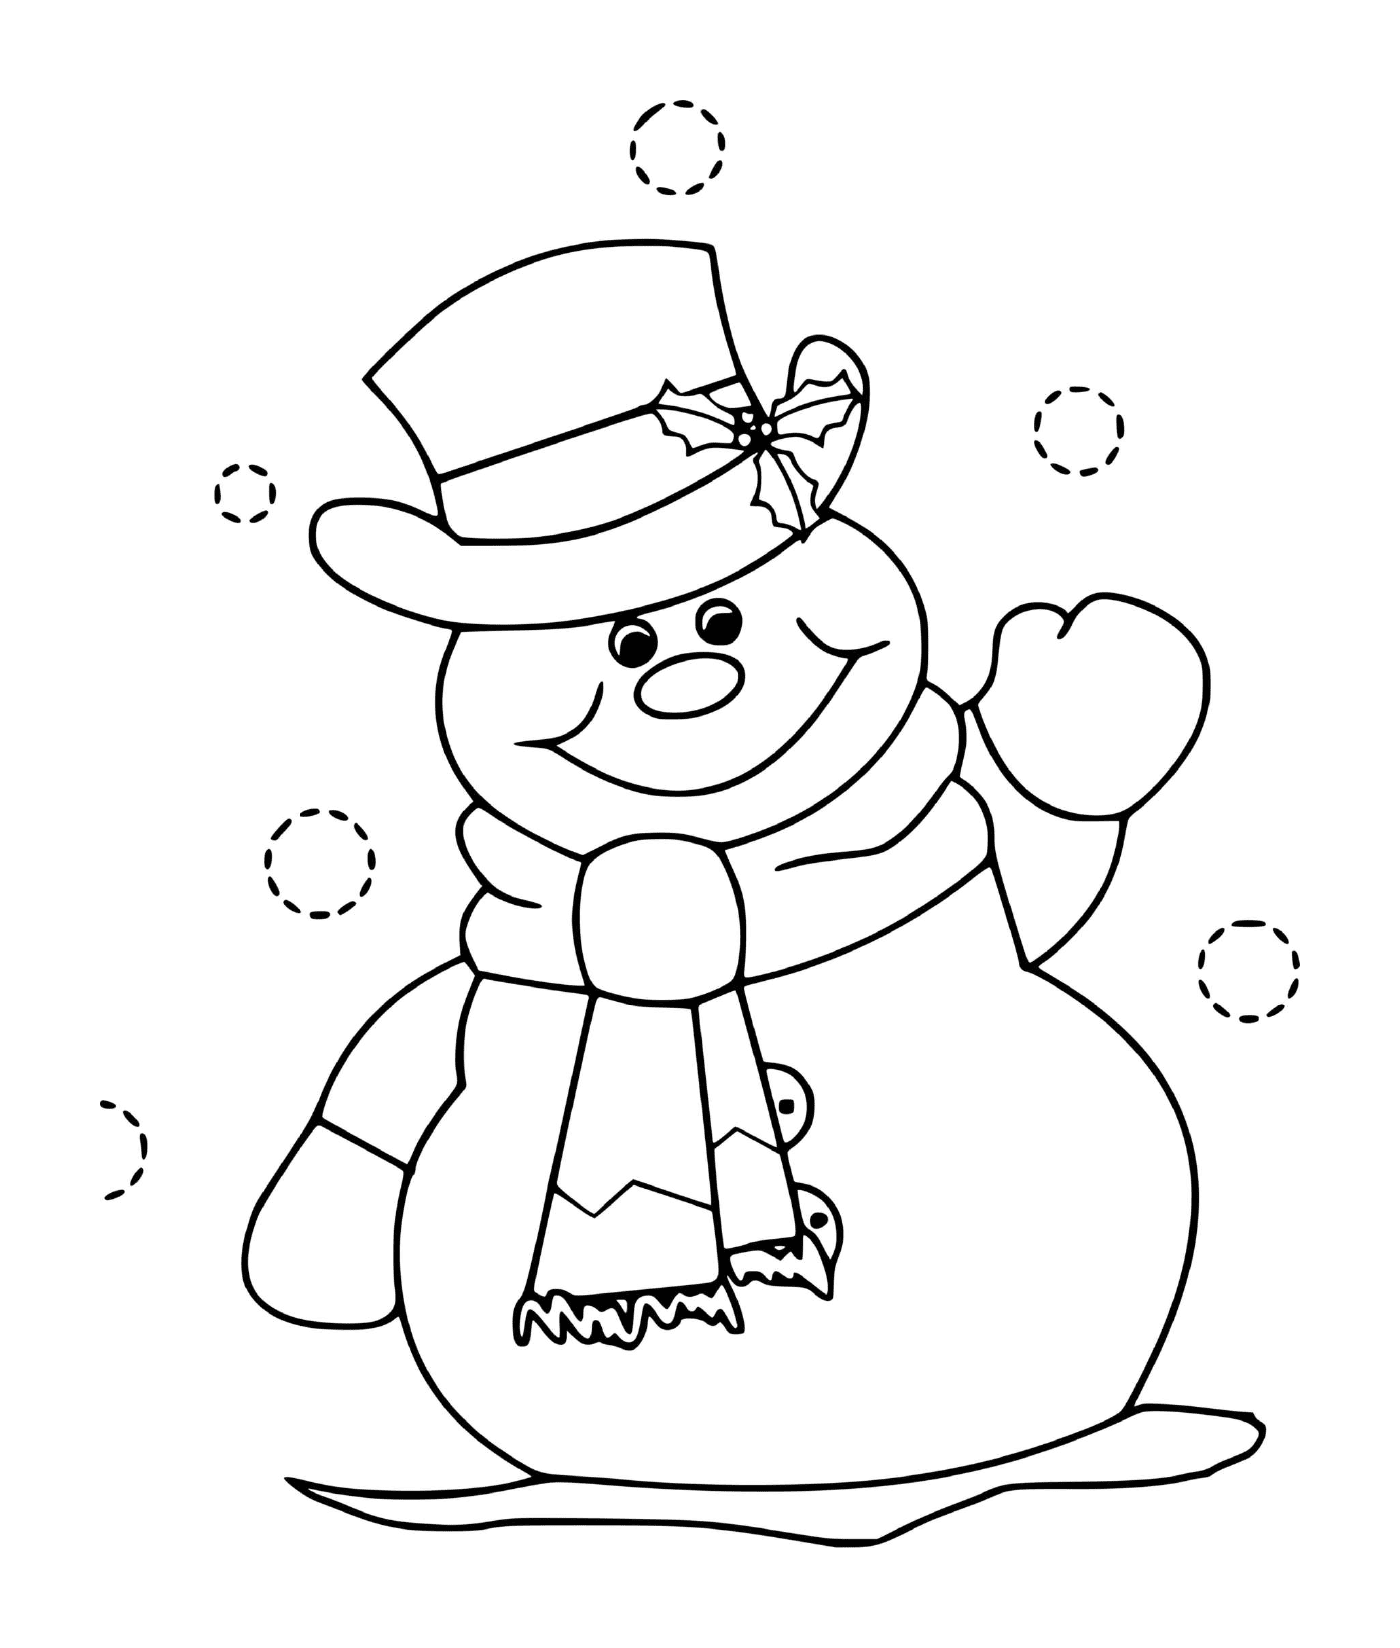  Зимний снеговик, улыбающаяся шляпа 